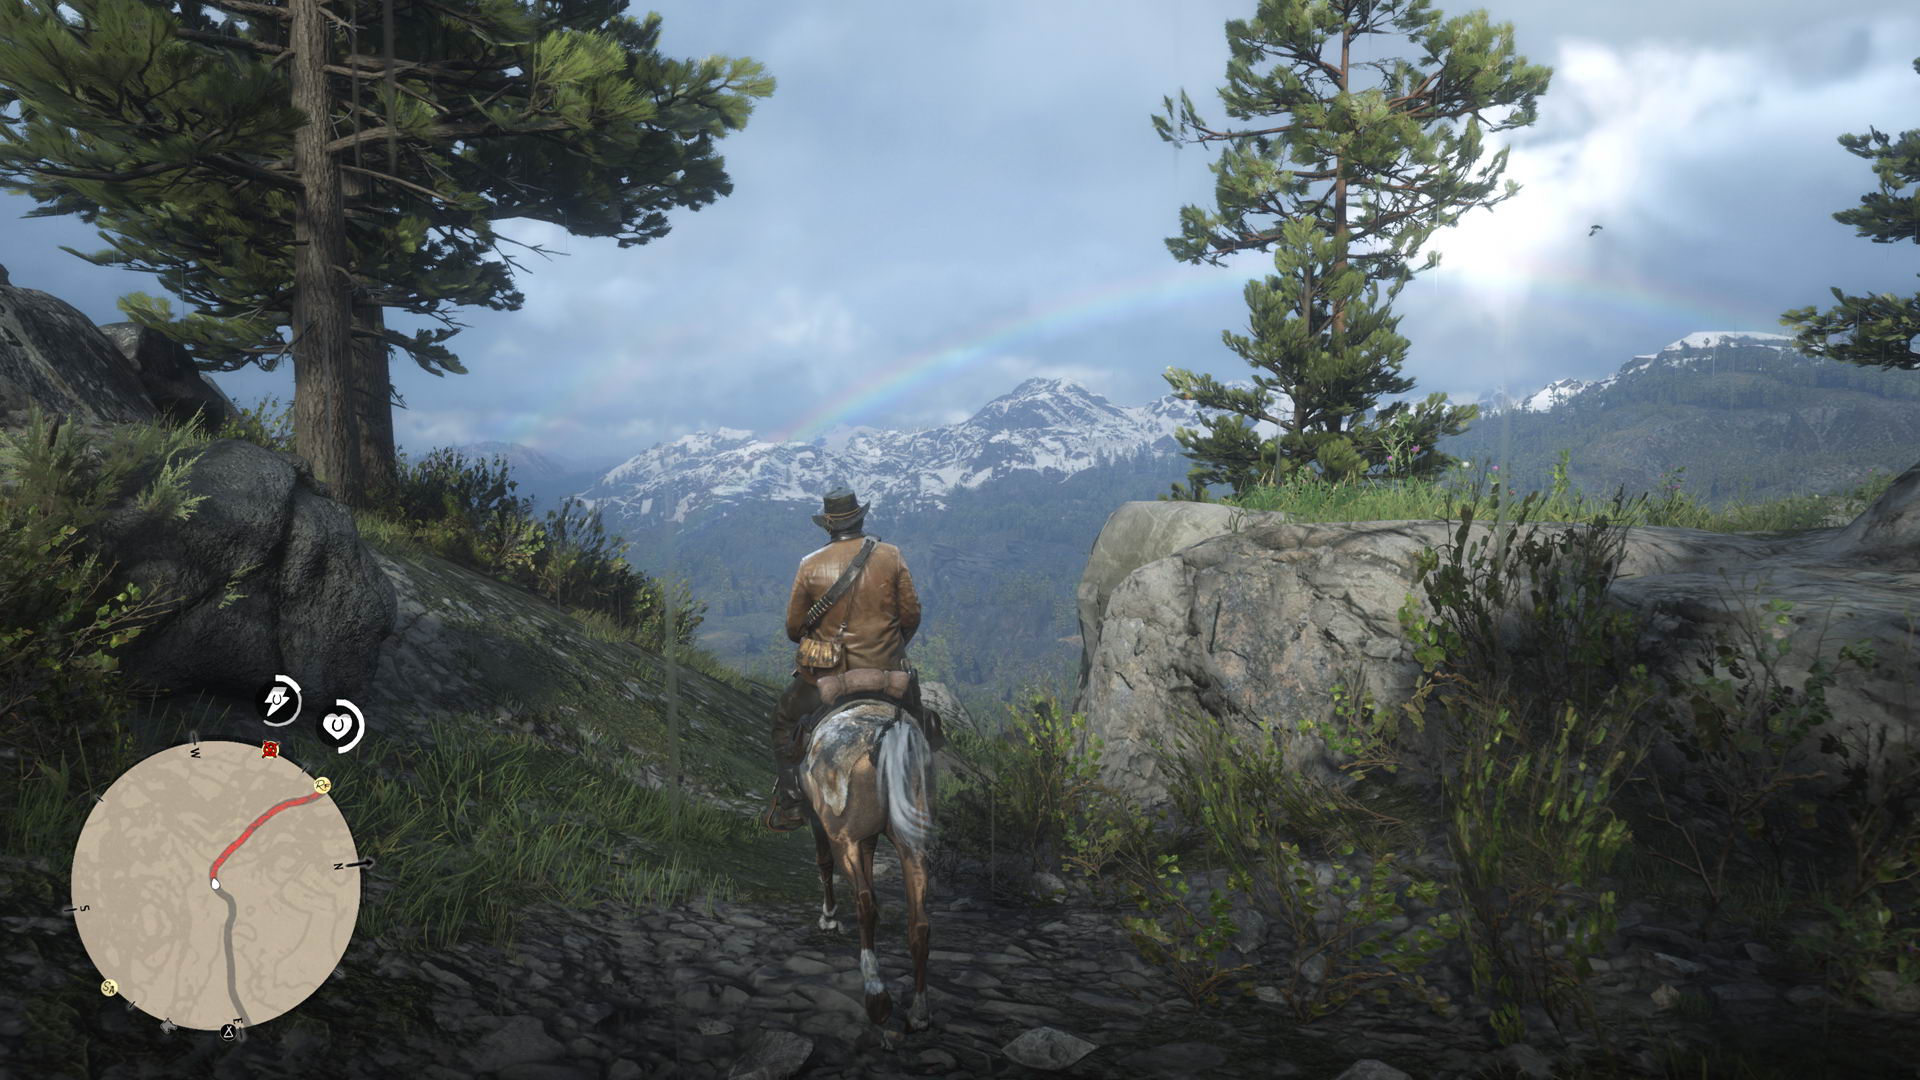 《荒野大镖客2》游戏截图欣赏 美丽逼真的风景让玩家沉醉